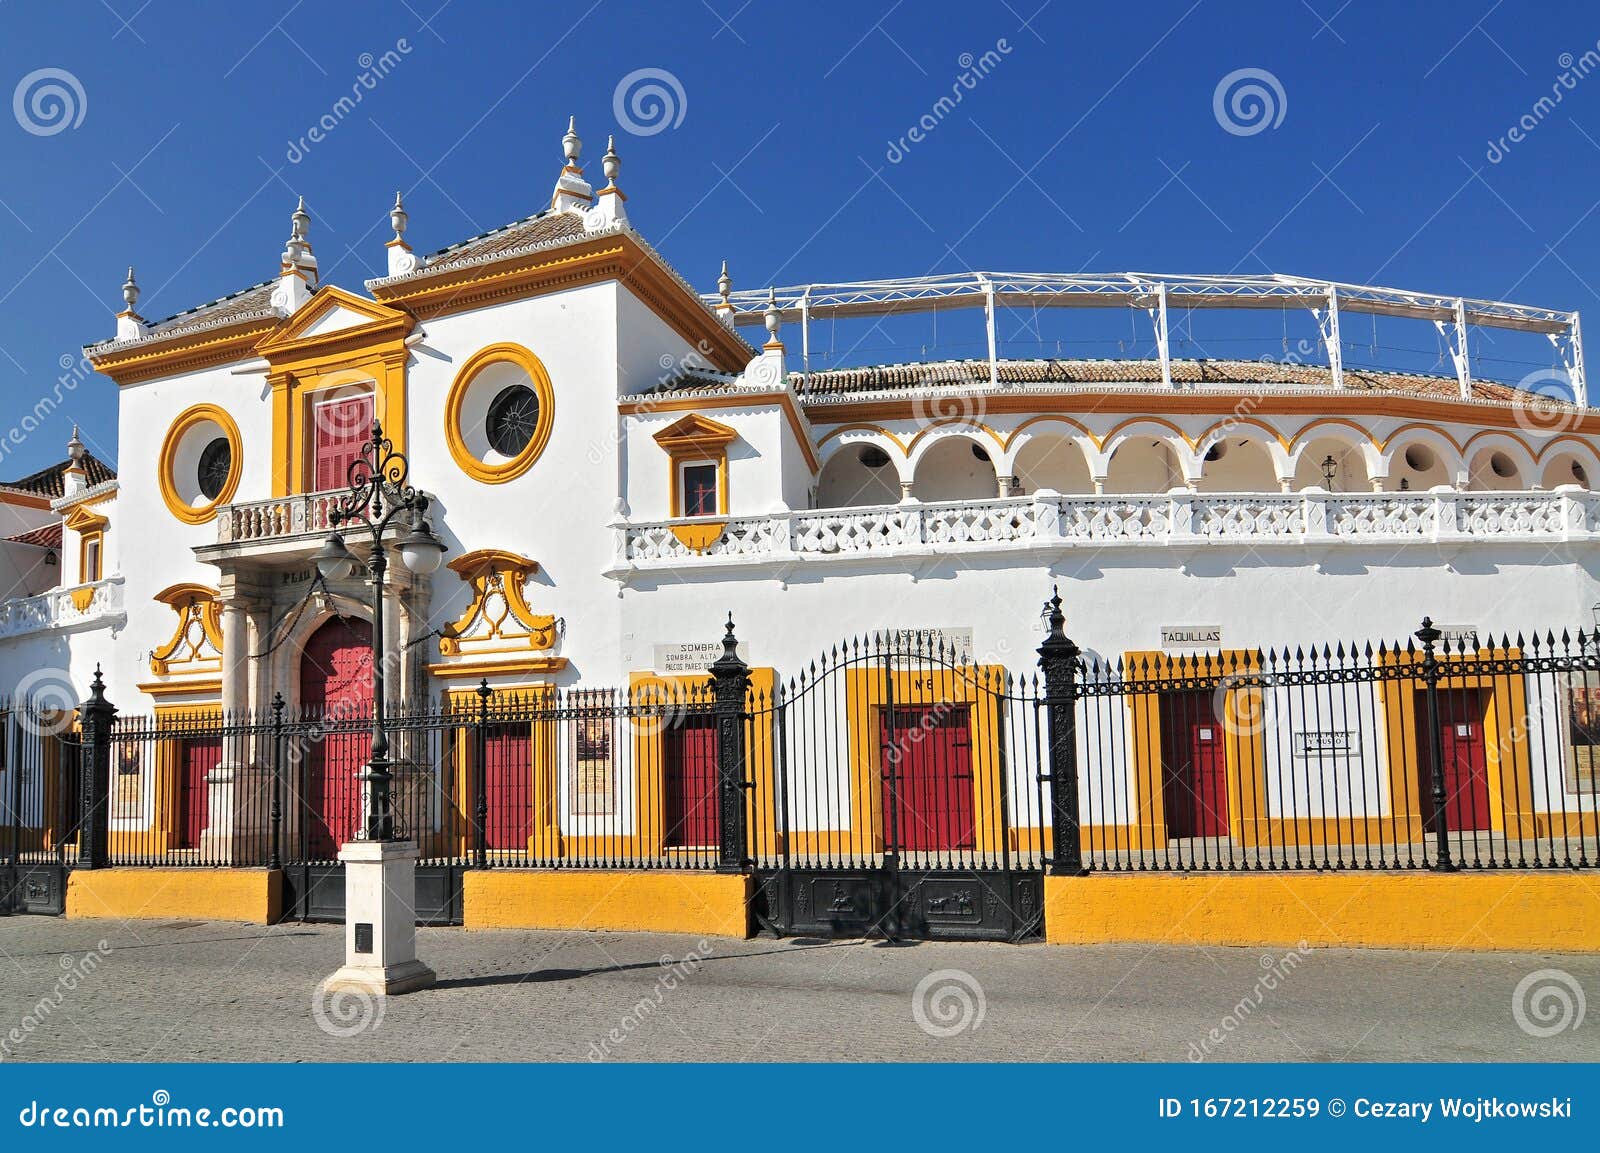 spain, andalusia, sevilla, plaza de toros de la real maestranza de caballeria de sevilla, the baroque facade of the bullring